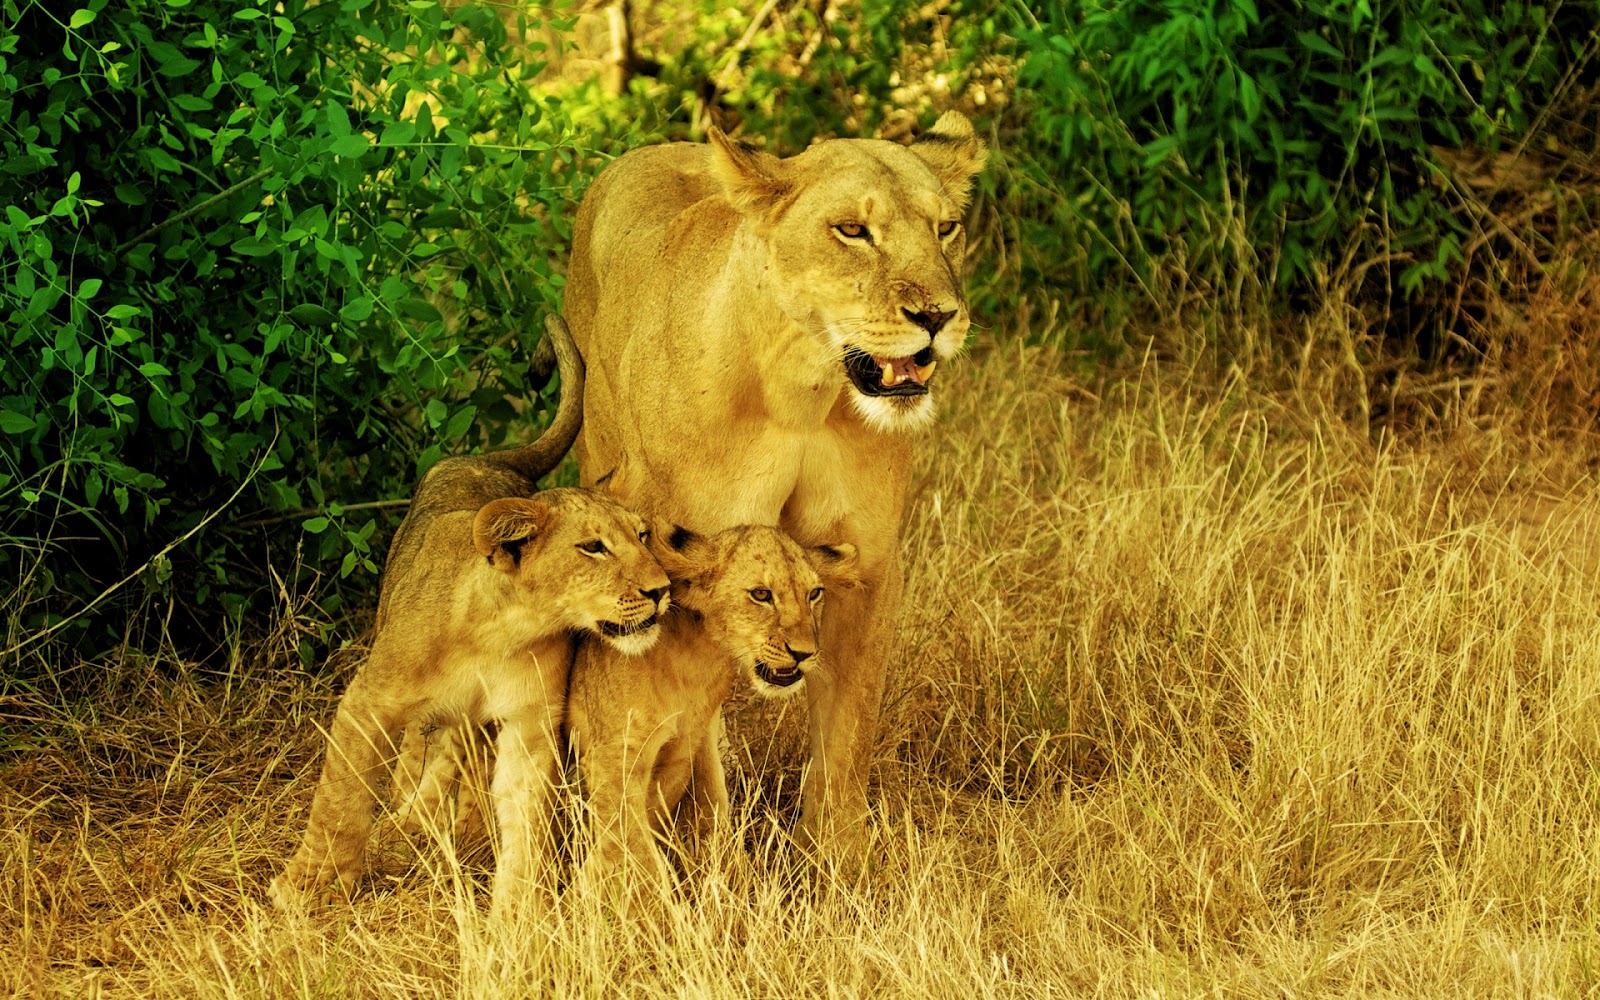 ライオン壁紙hd 1080p,野生動物,ライオン,陸生動物,ネコ科,マサイライオン